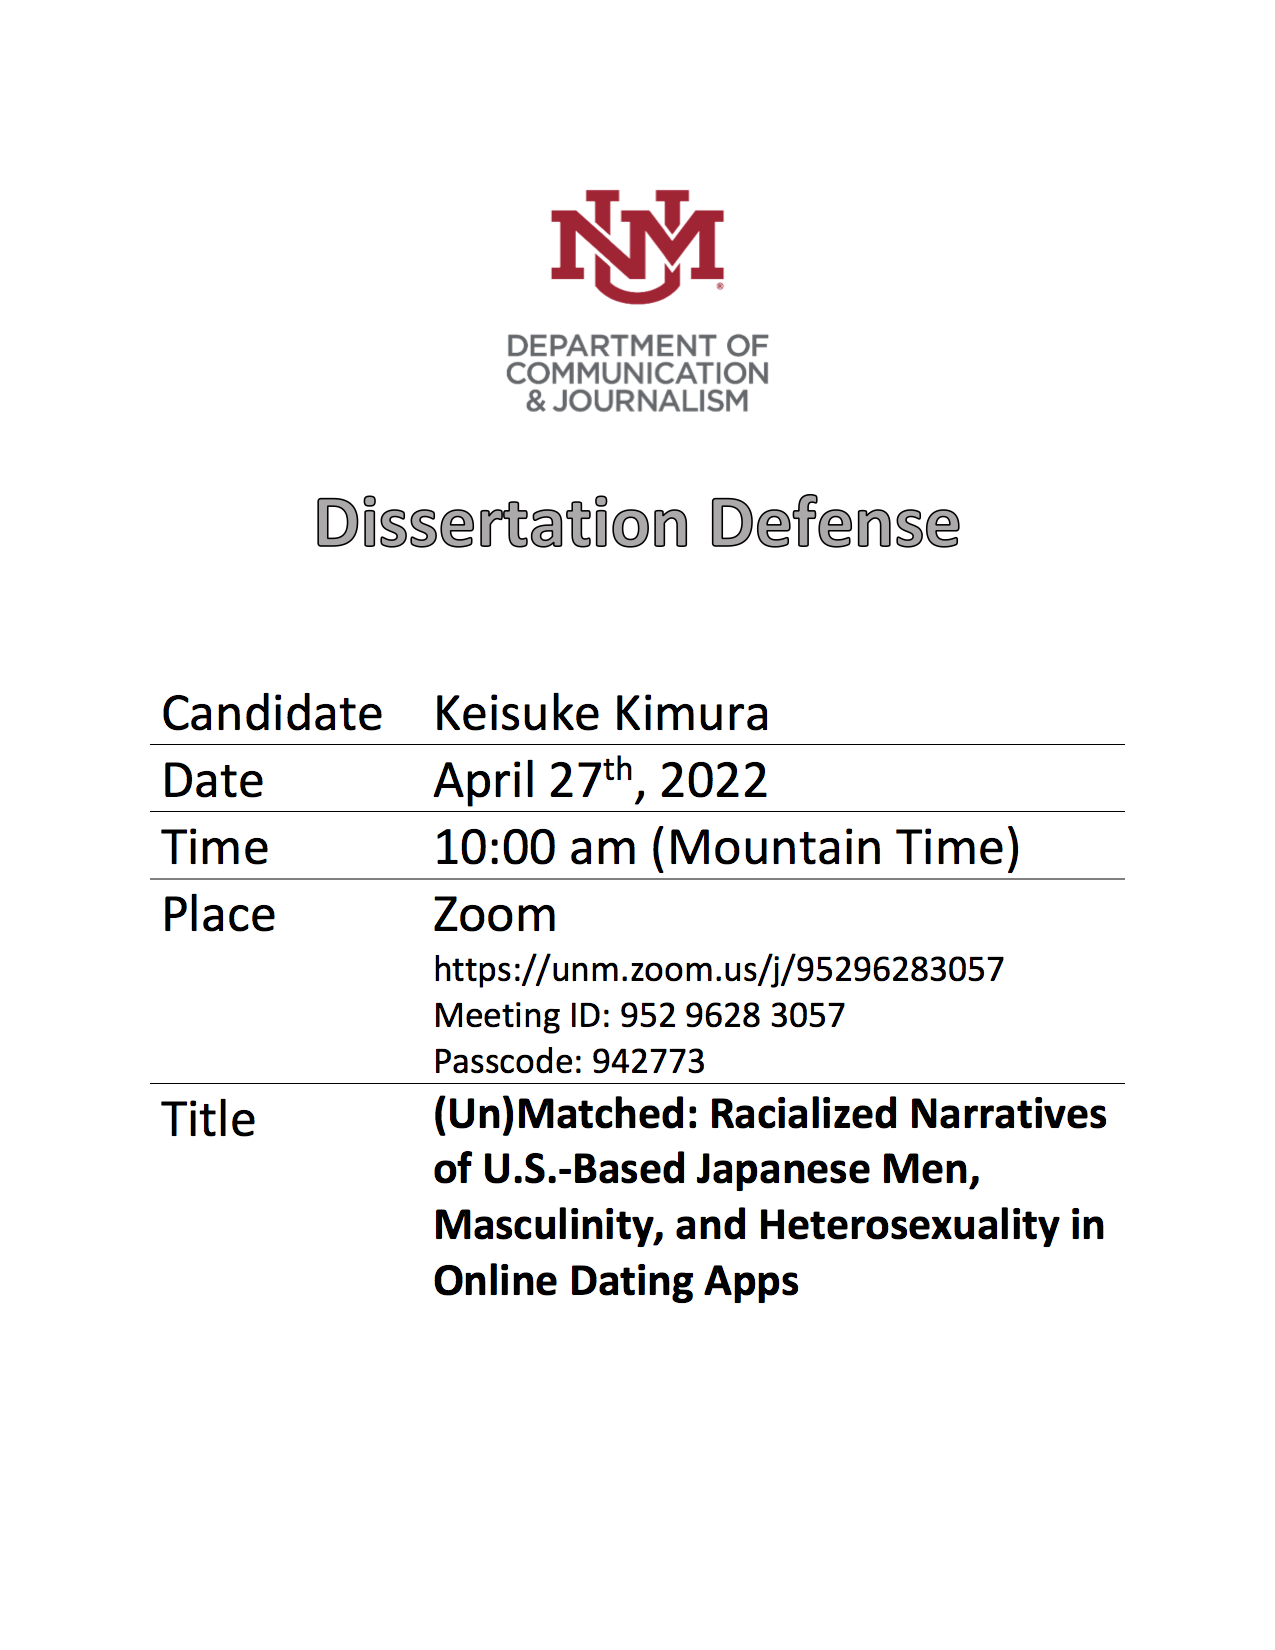 kimura-dissertation-defense-flyer_maria-hazel-mendoza.png